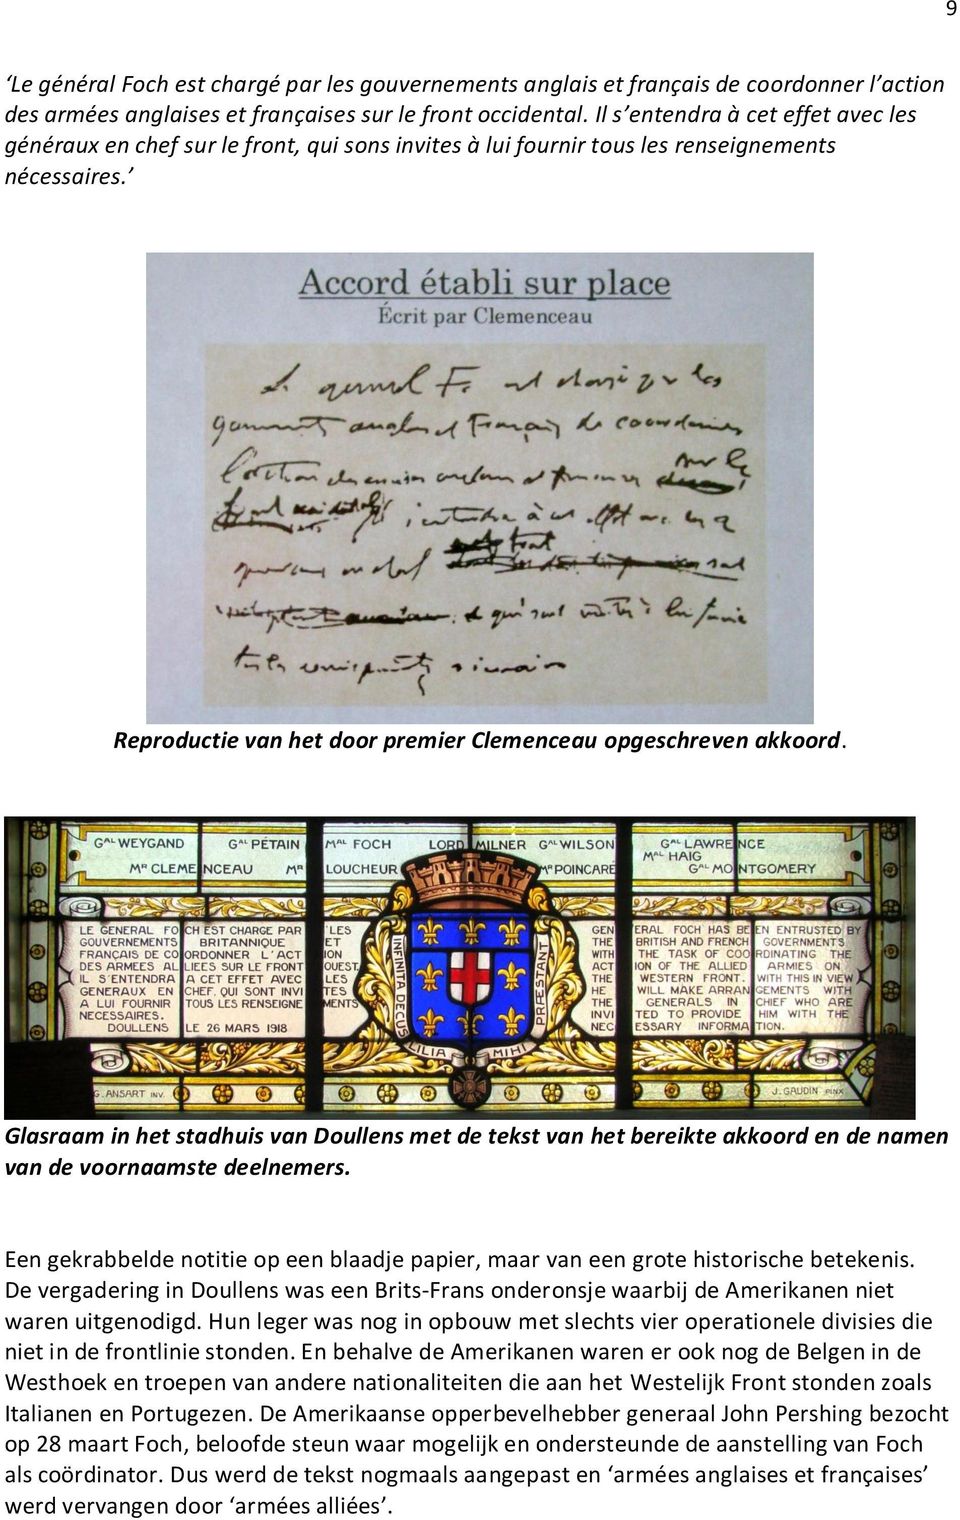 Glasraam in het stadhuis van Doullens met de tekst van het bereikte akkoord en de namen van de voornaamste deelnemers.